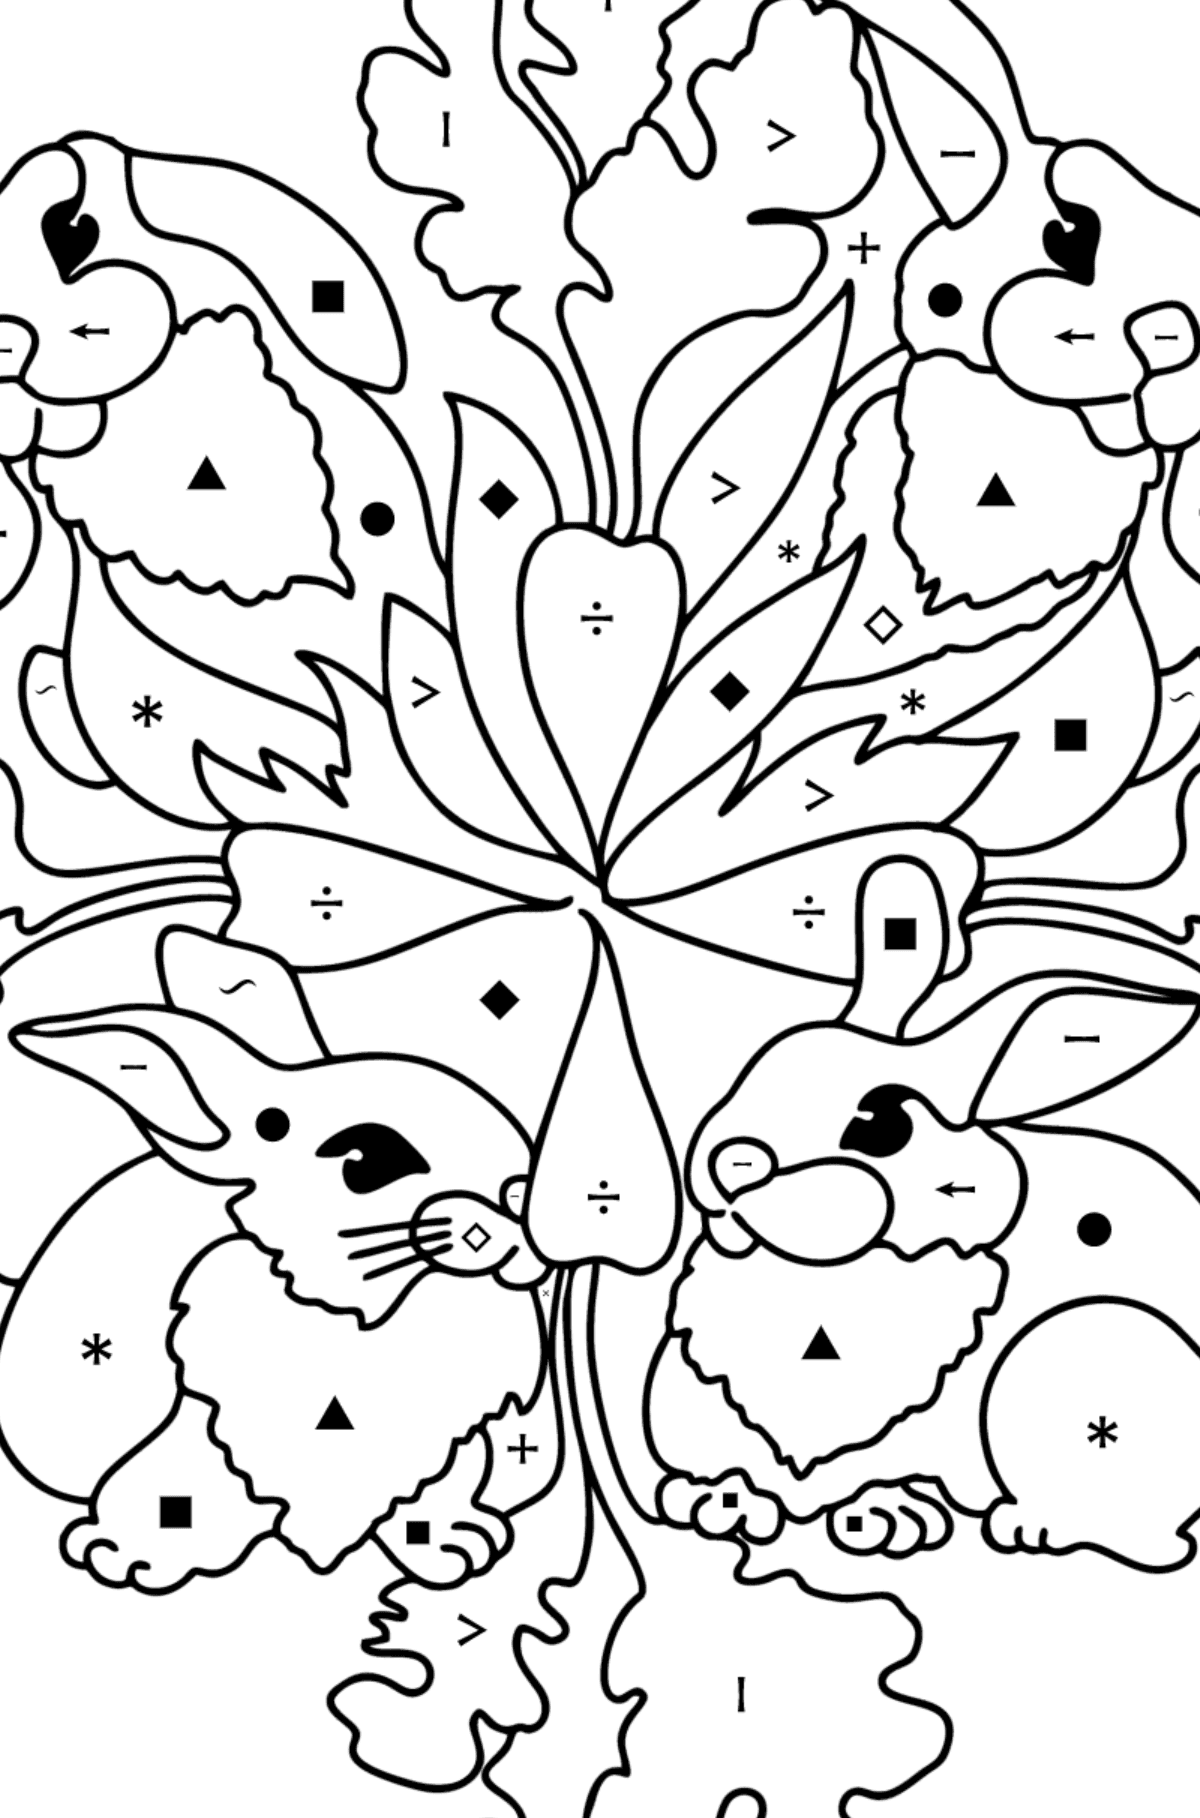 Kleurplaat mandala konijntje - Kleuren met symbolen voor kinderen